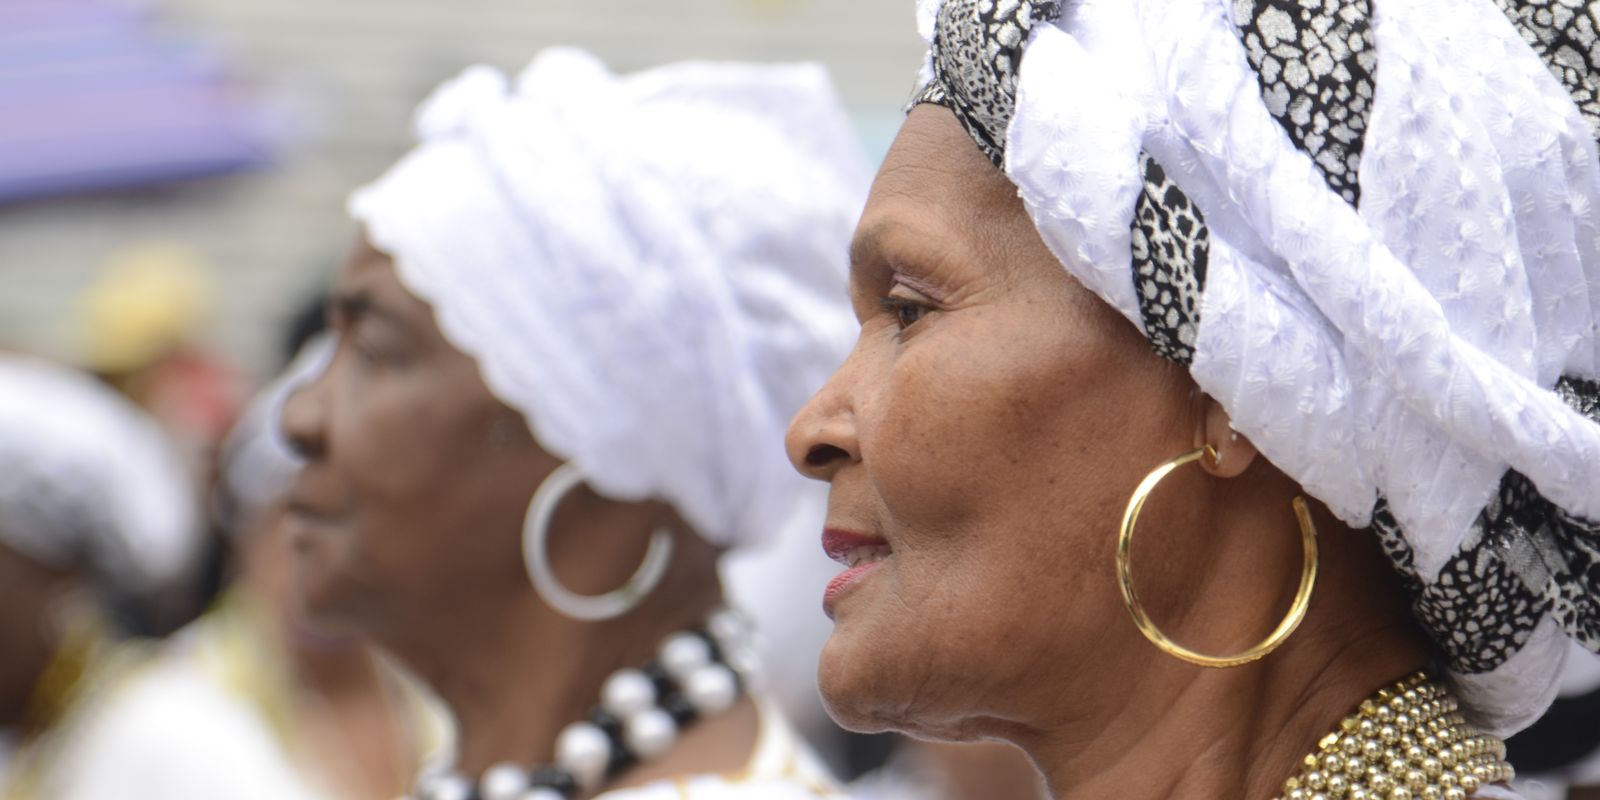 Governo terá programação especial para celebrar o Mês da Consciência Negra  - Portal do Estado do Rio Grande do Sul